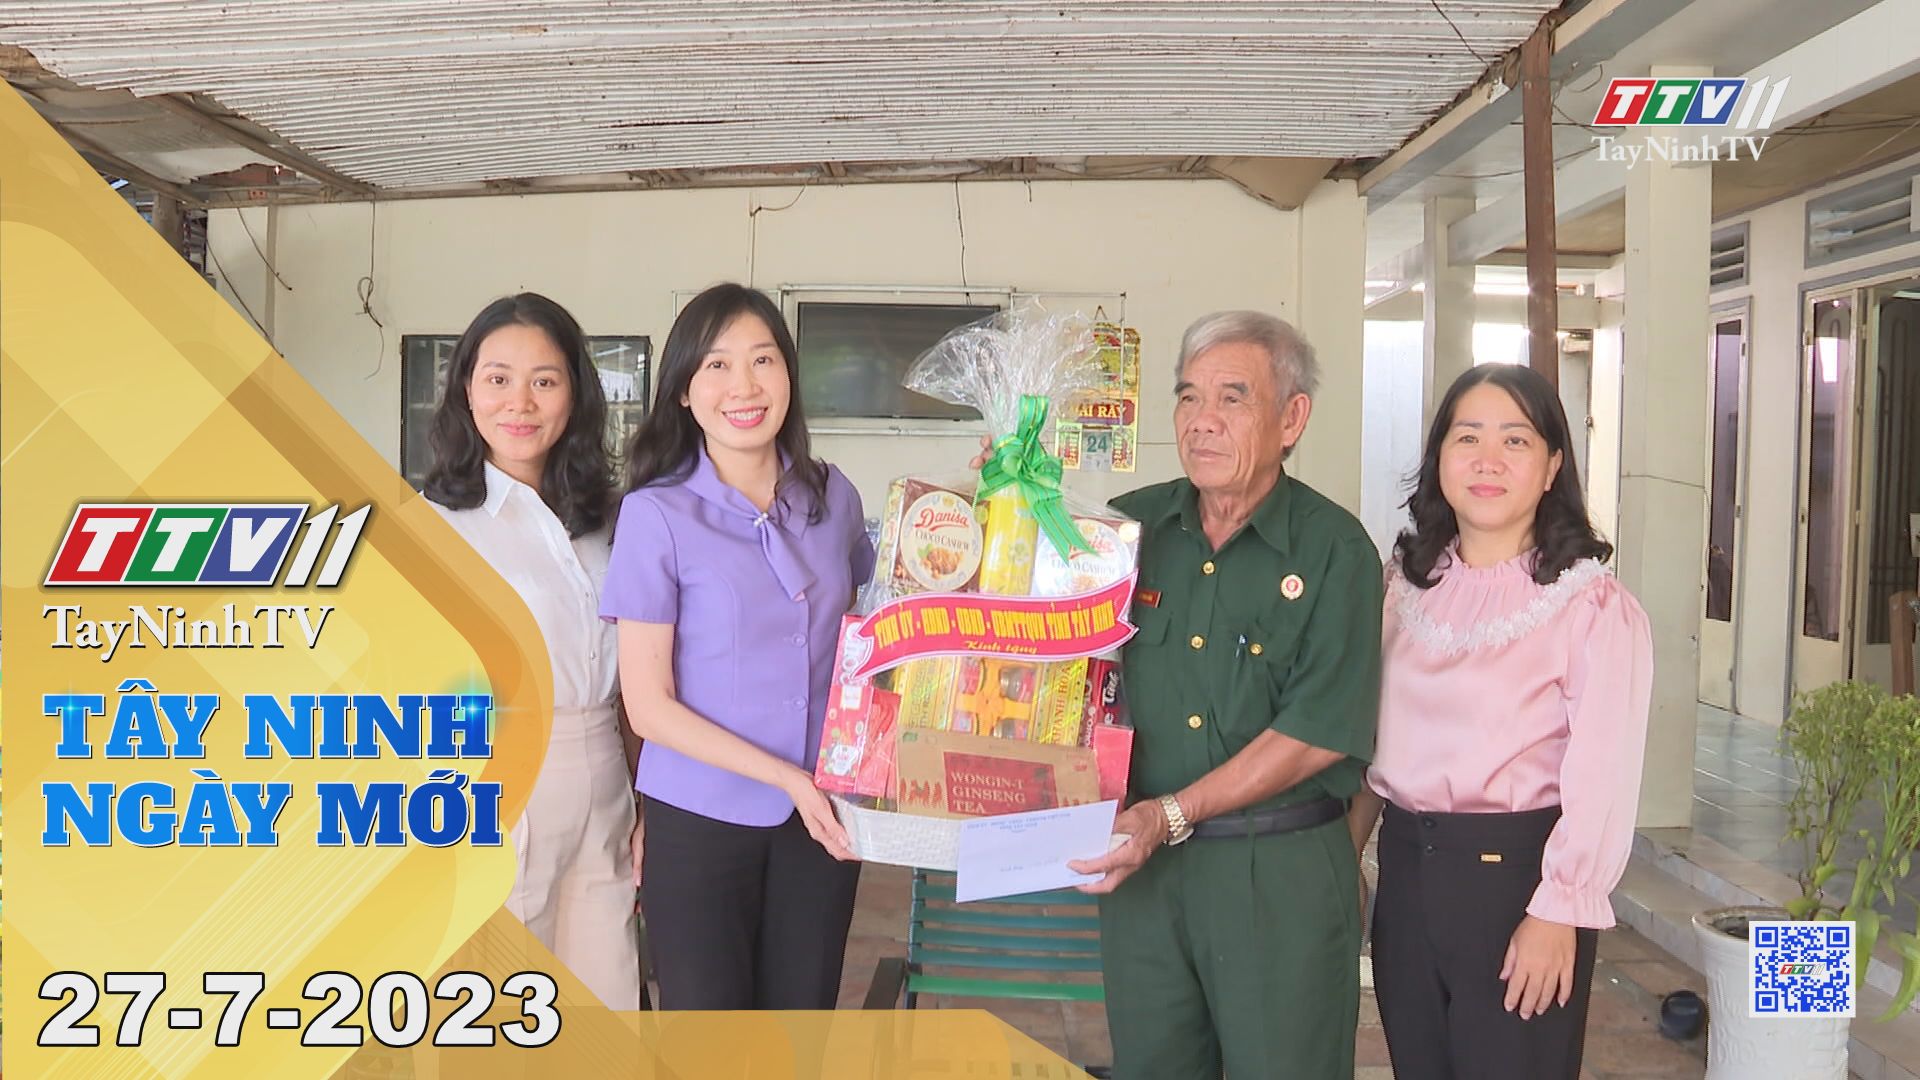 Tây Ninh ngày mới 27-7-2023 | Tin tức hôm nay | TayNinhTV